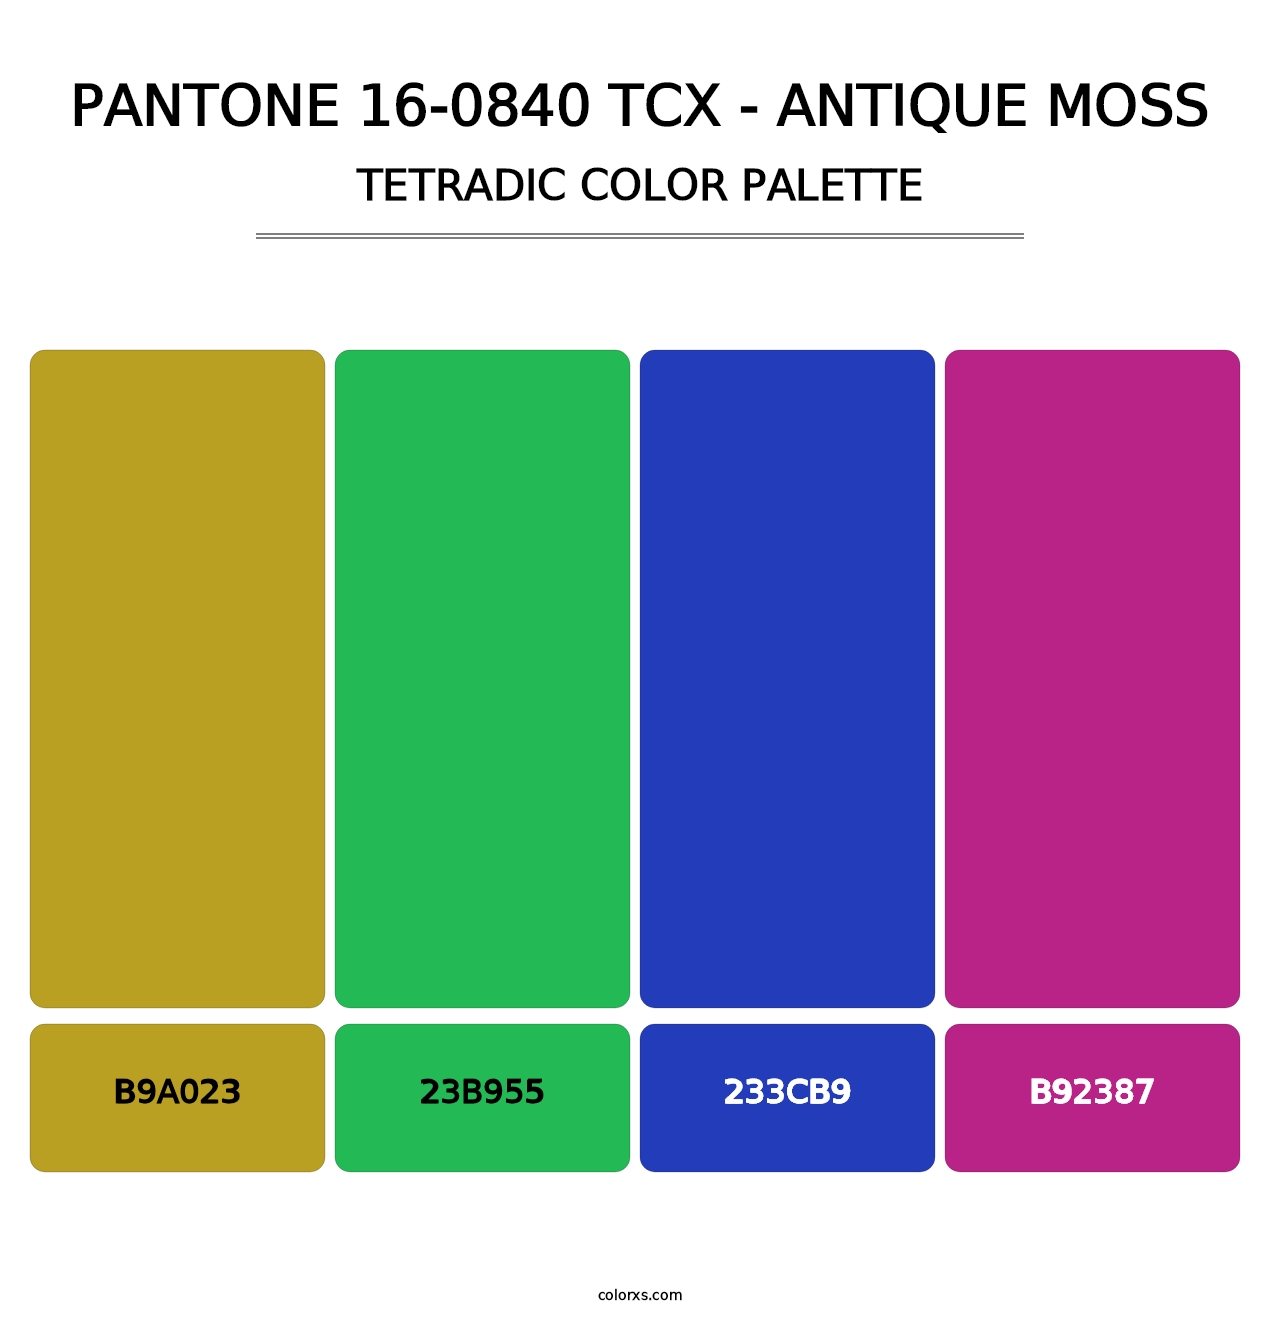 PANTONE 16-0840 TCX - Antique Moss - Tetradic Color Palette